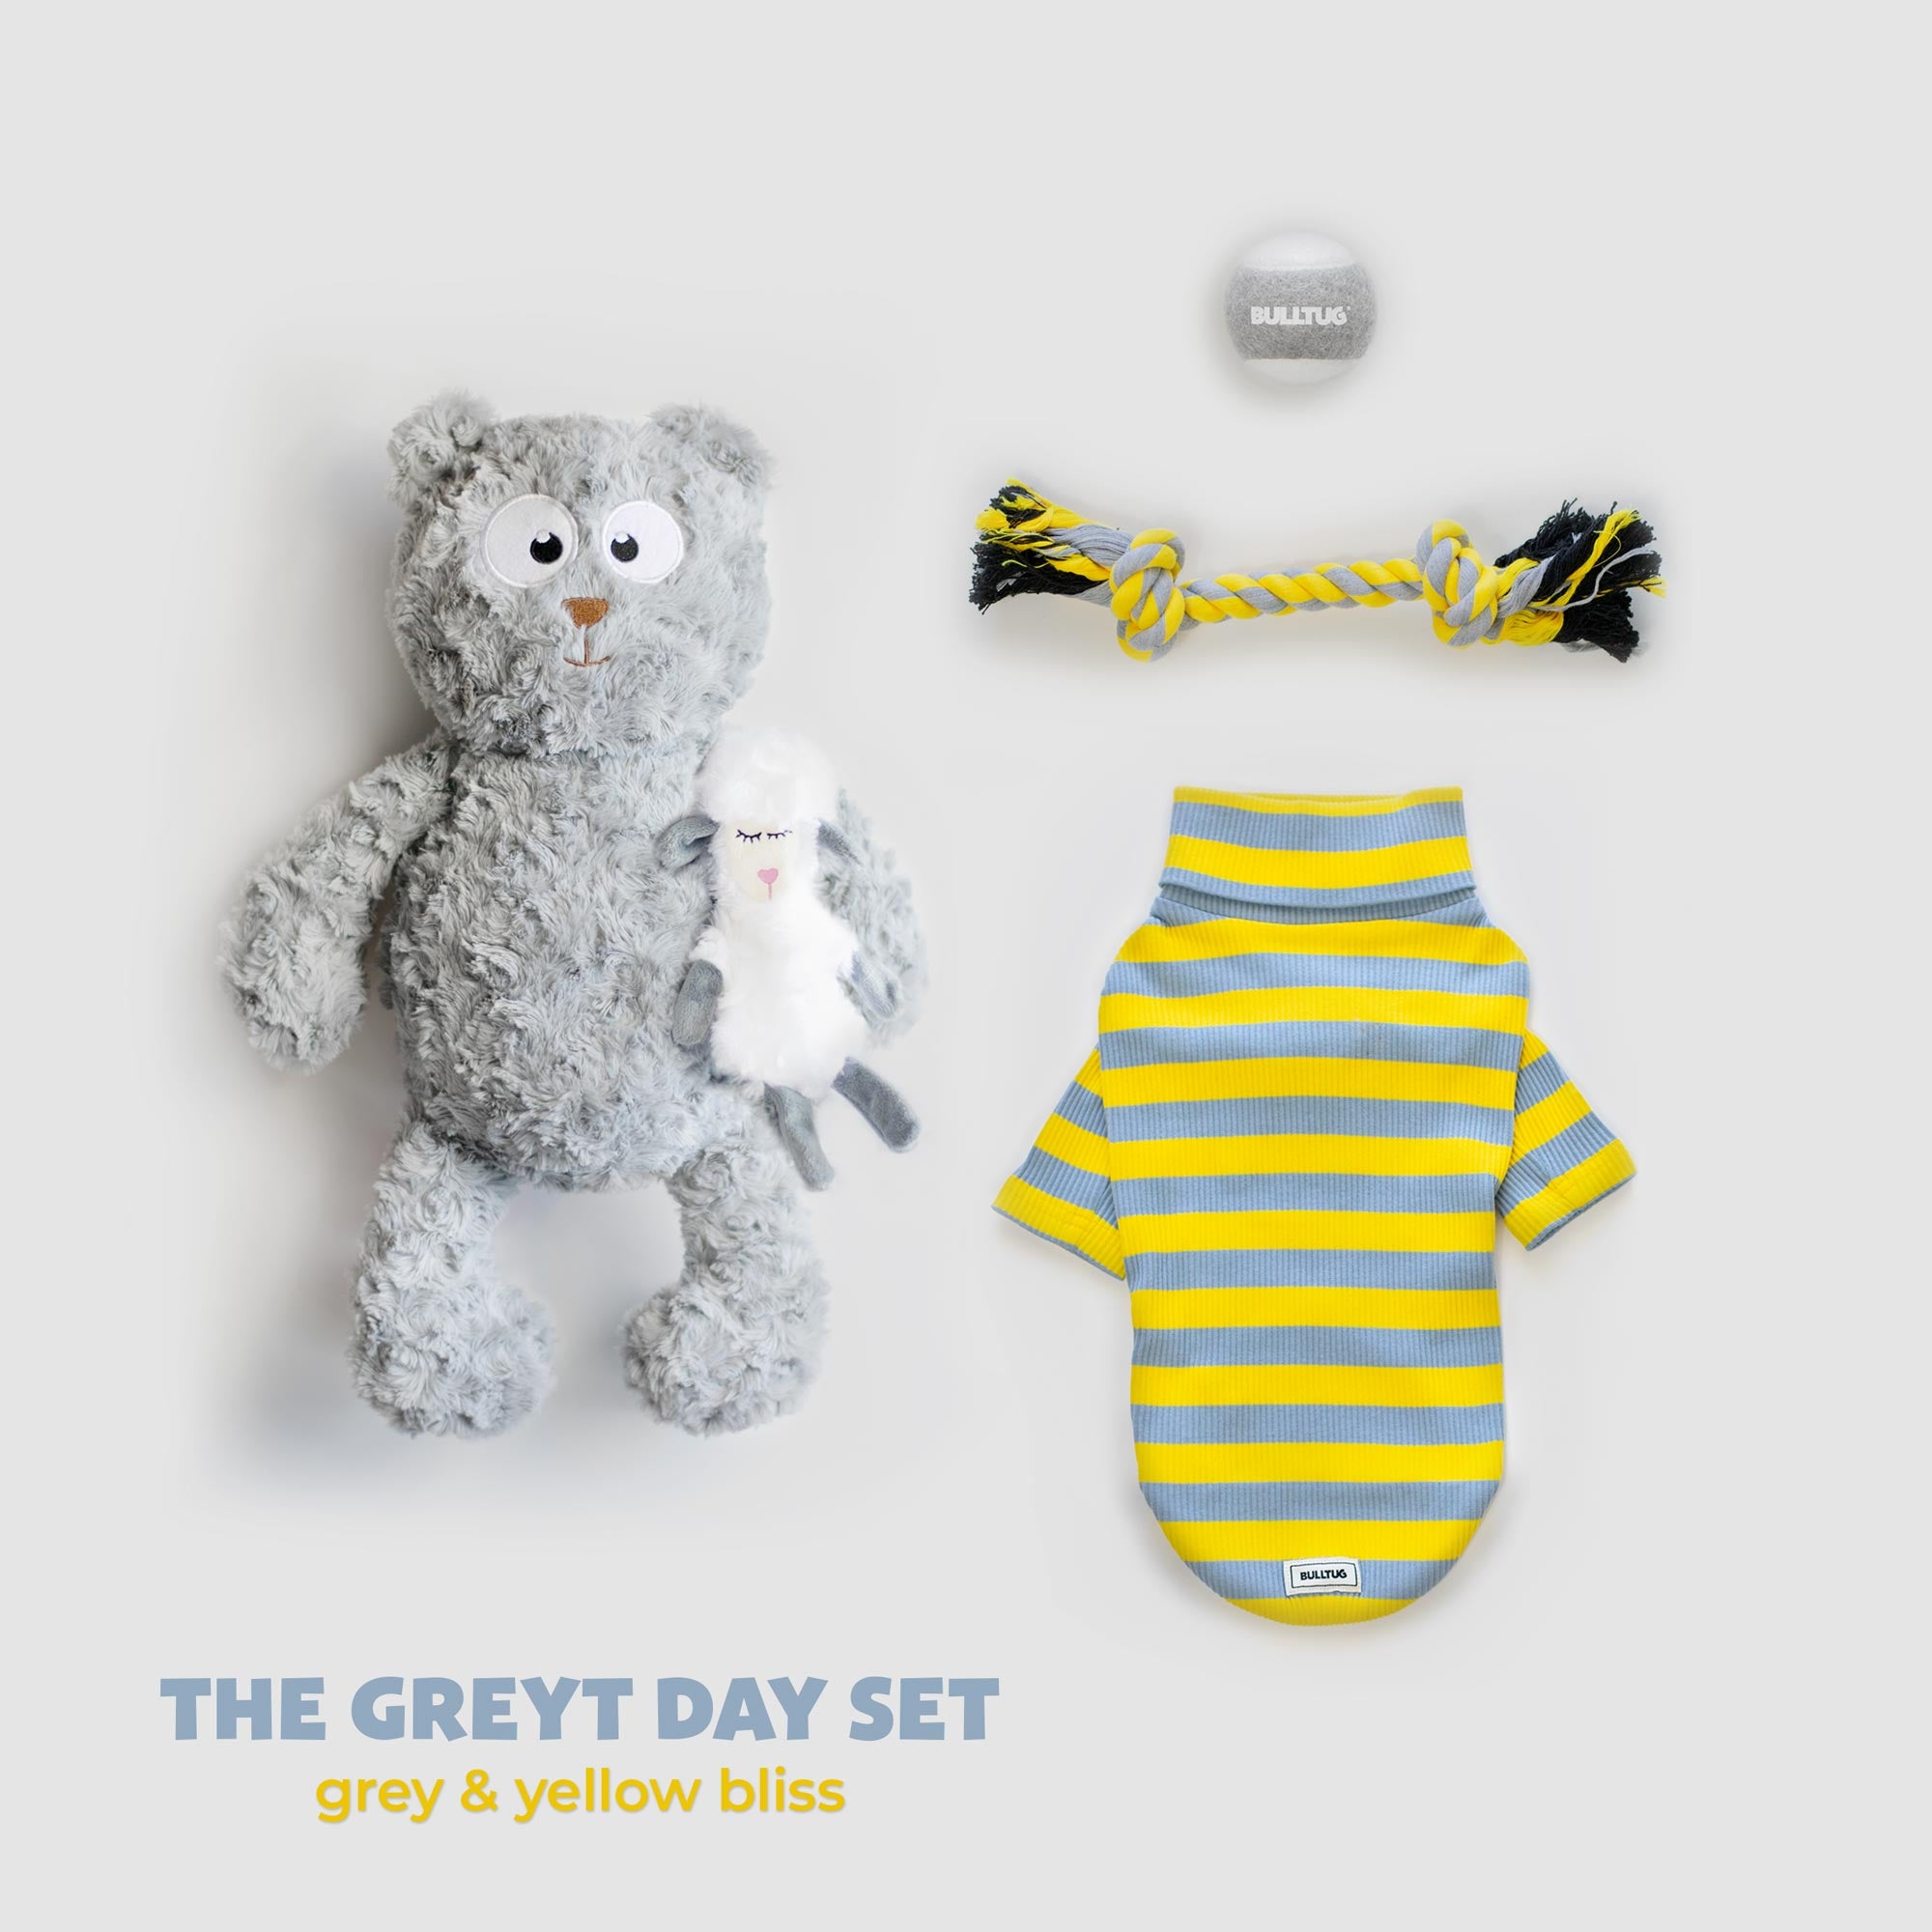 Cute & Cuddly Fun: The Greyt Day Set! 🐾✨